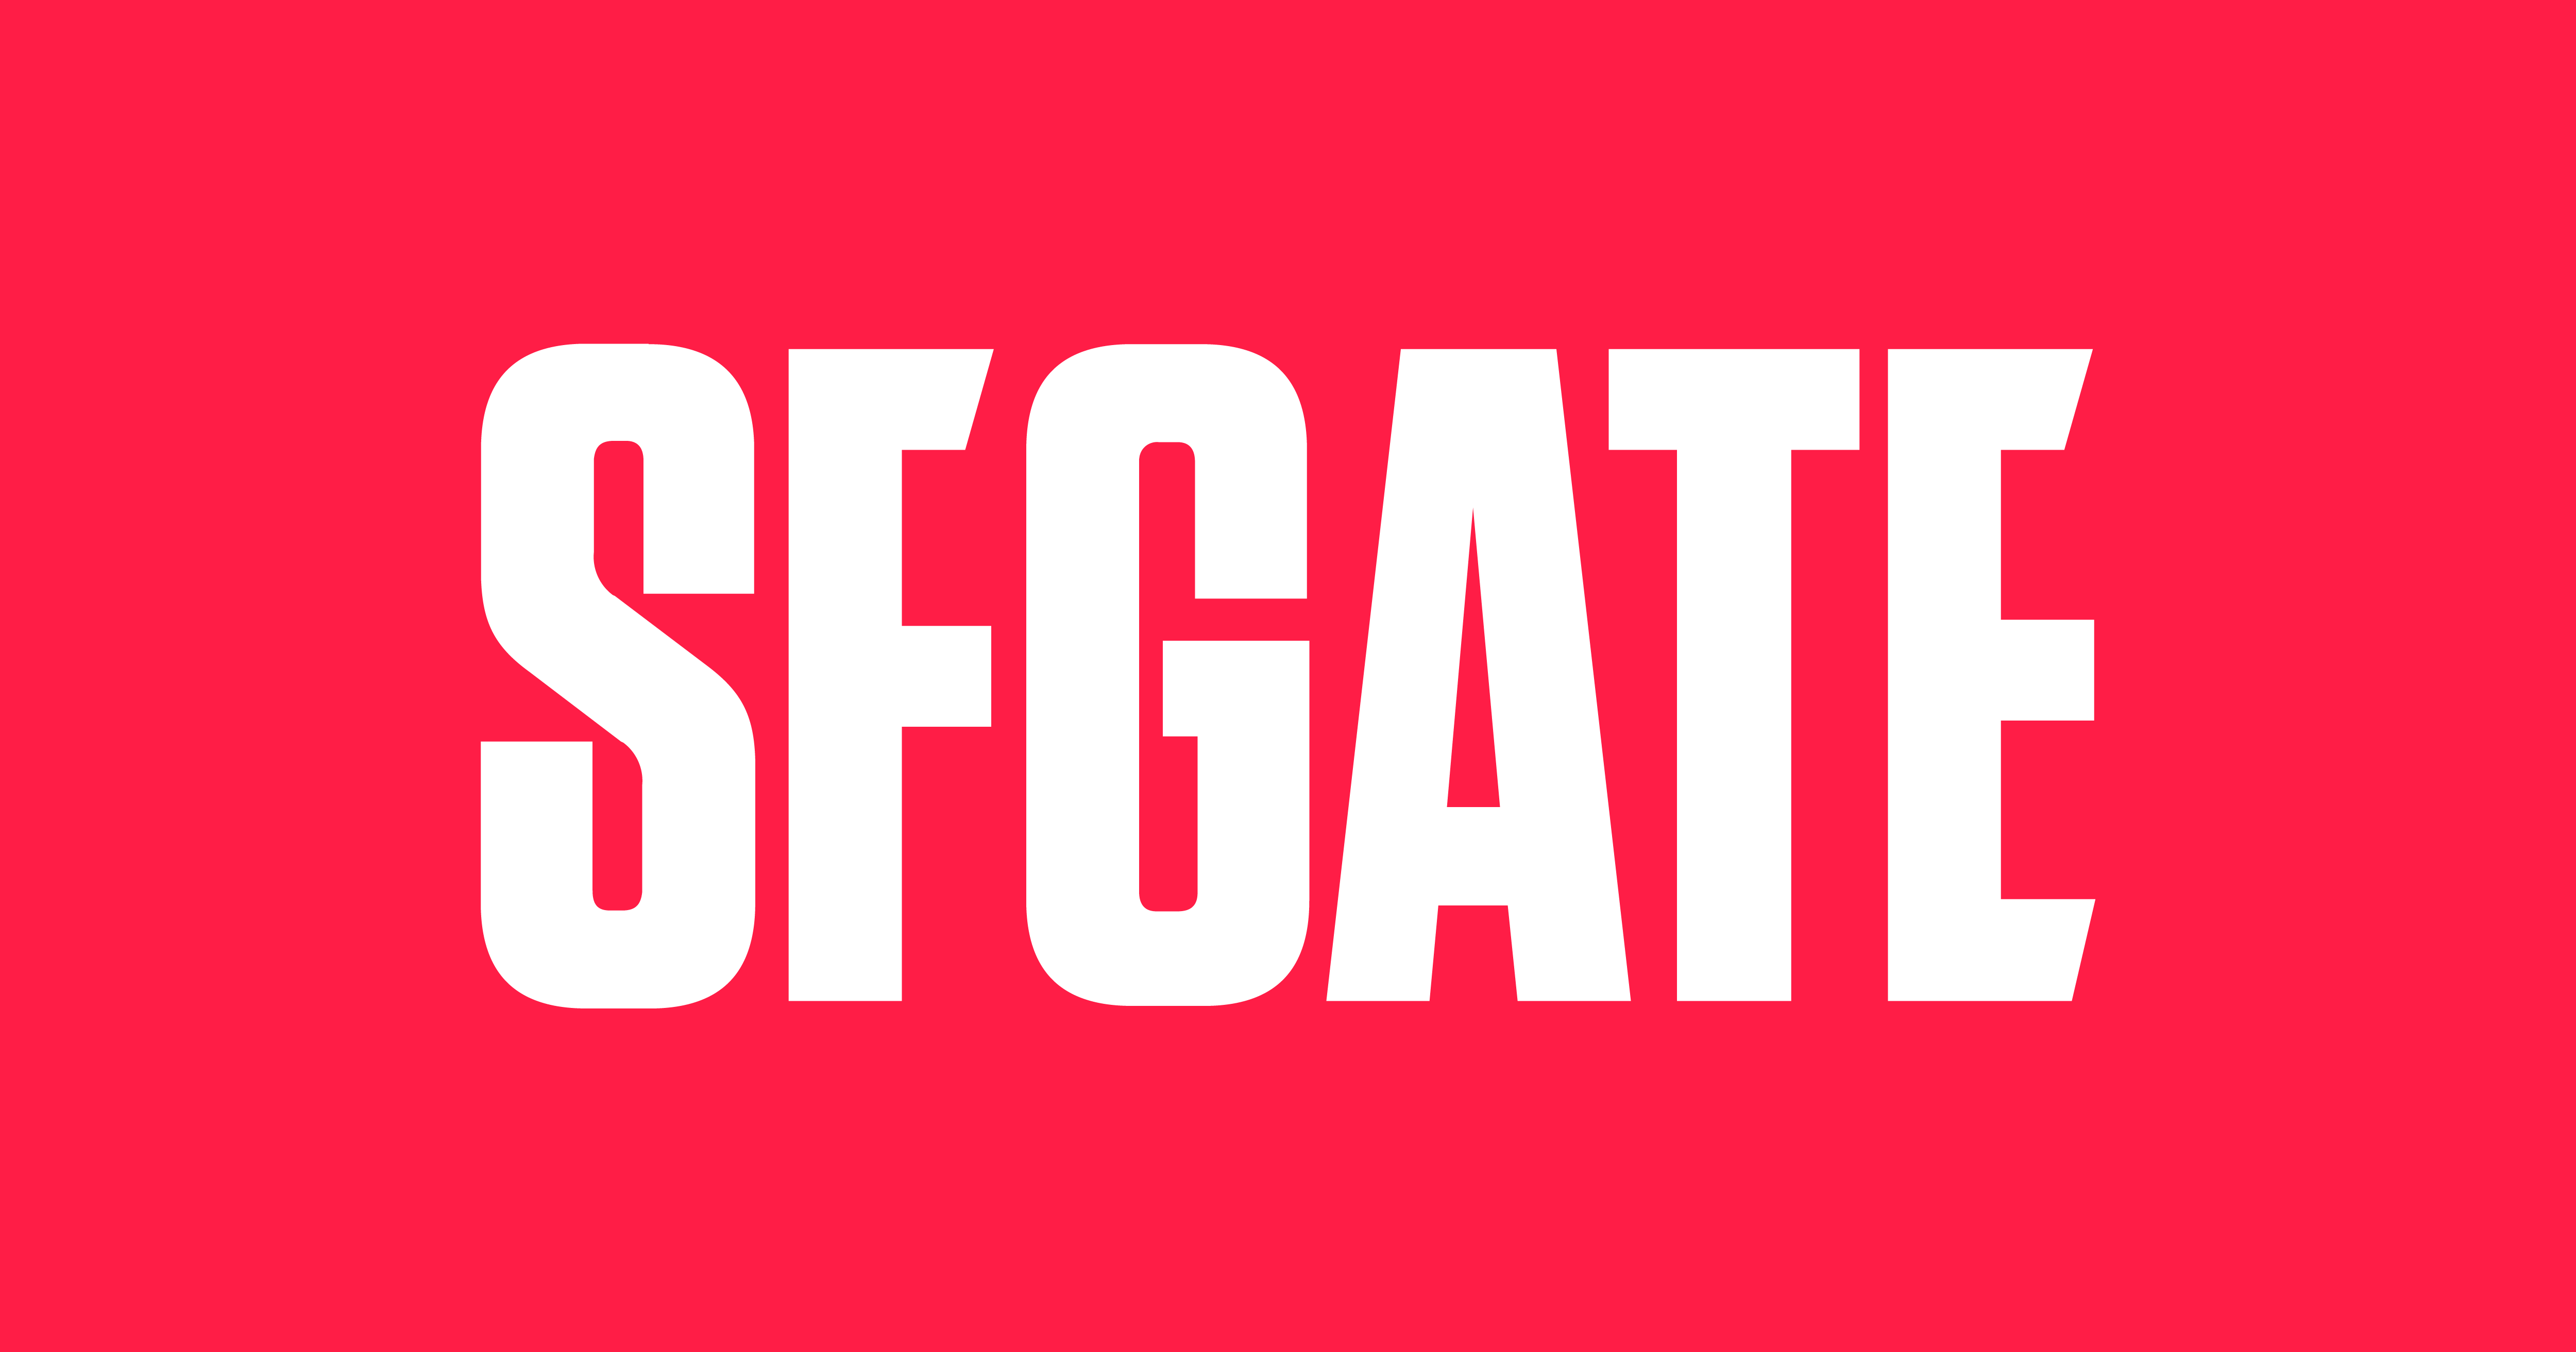 m.sfgate.com